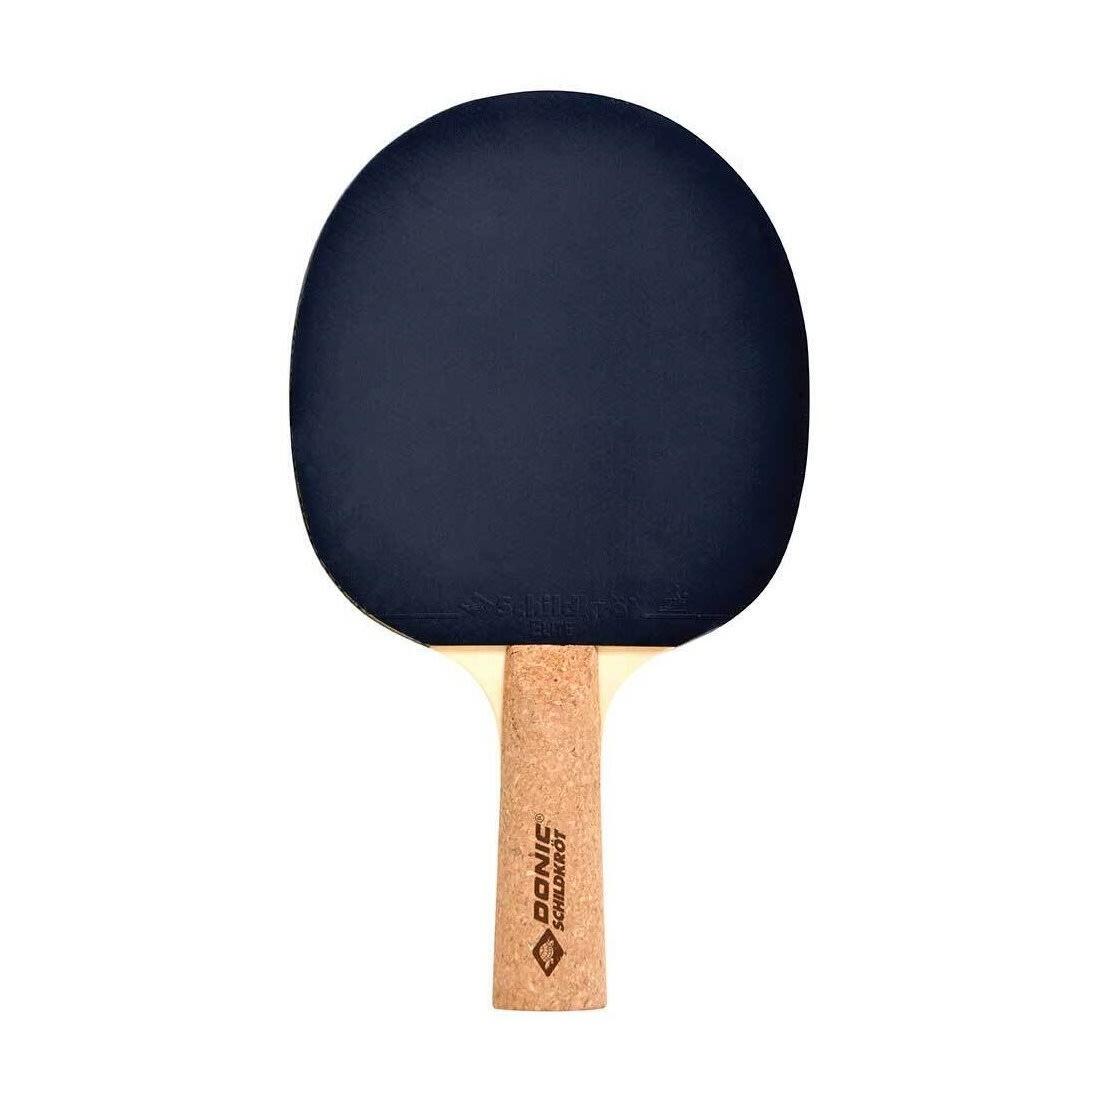 DONIC SCHILDKRÖT Persson 500 Table Tennis Bat (Black/Beige)